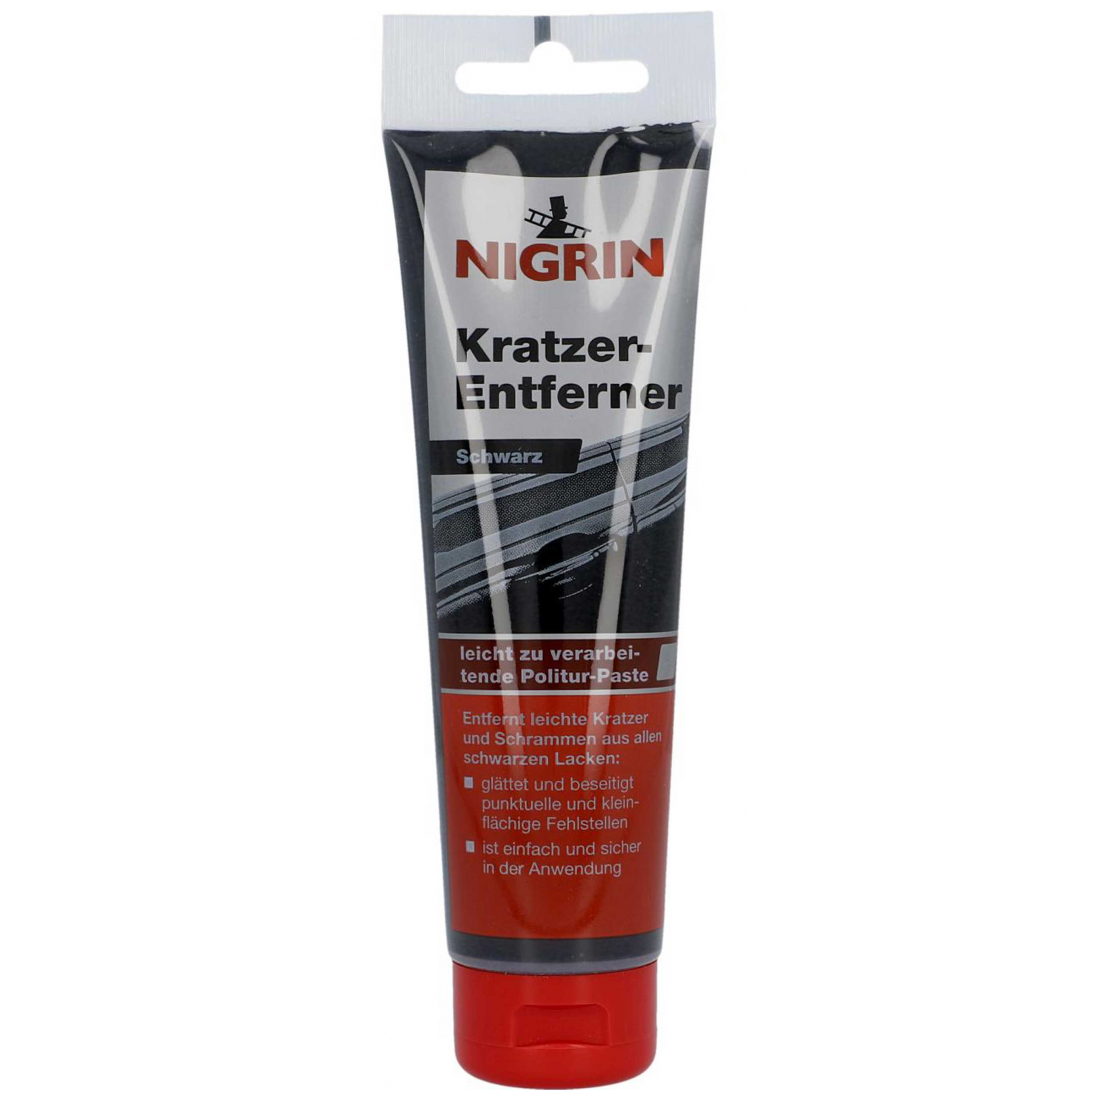 Nigrin Kratzer-Entferner schwarz 74256 150 g